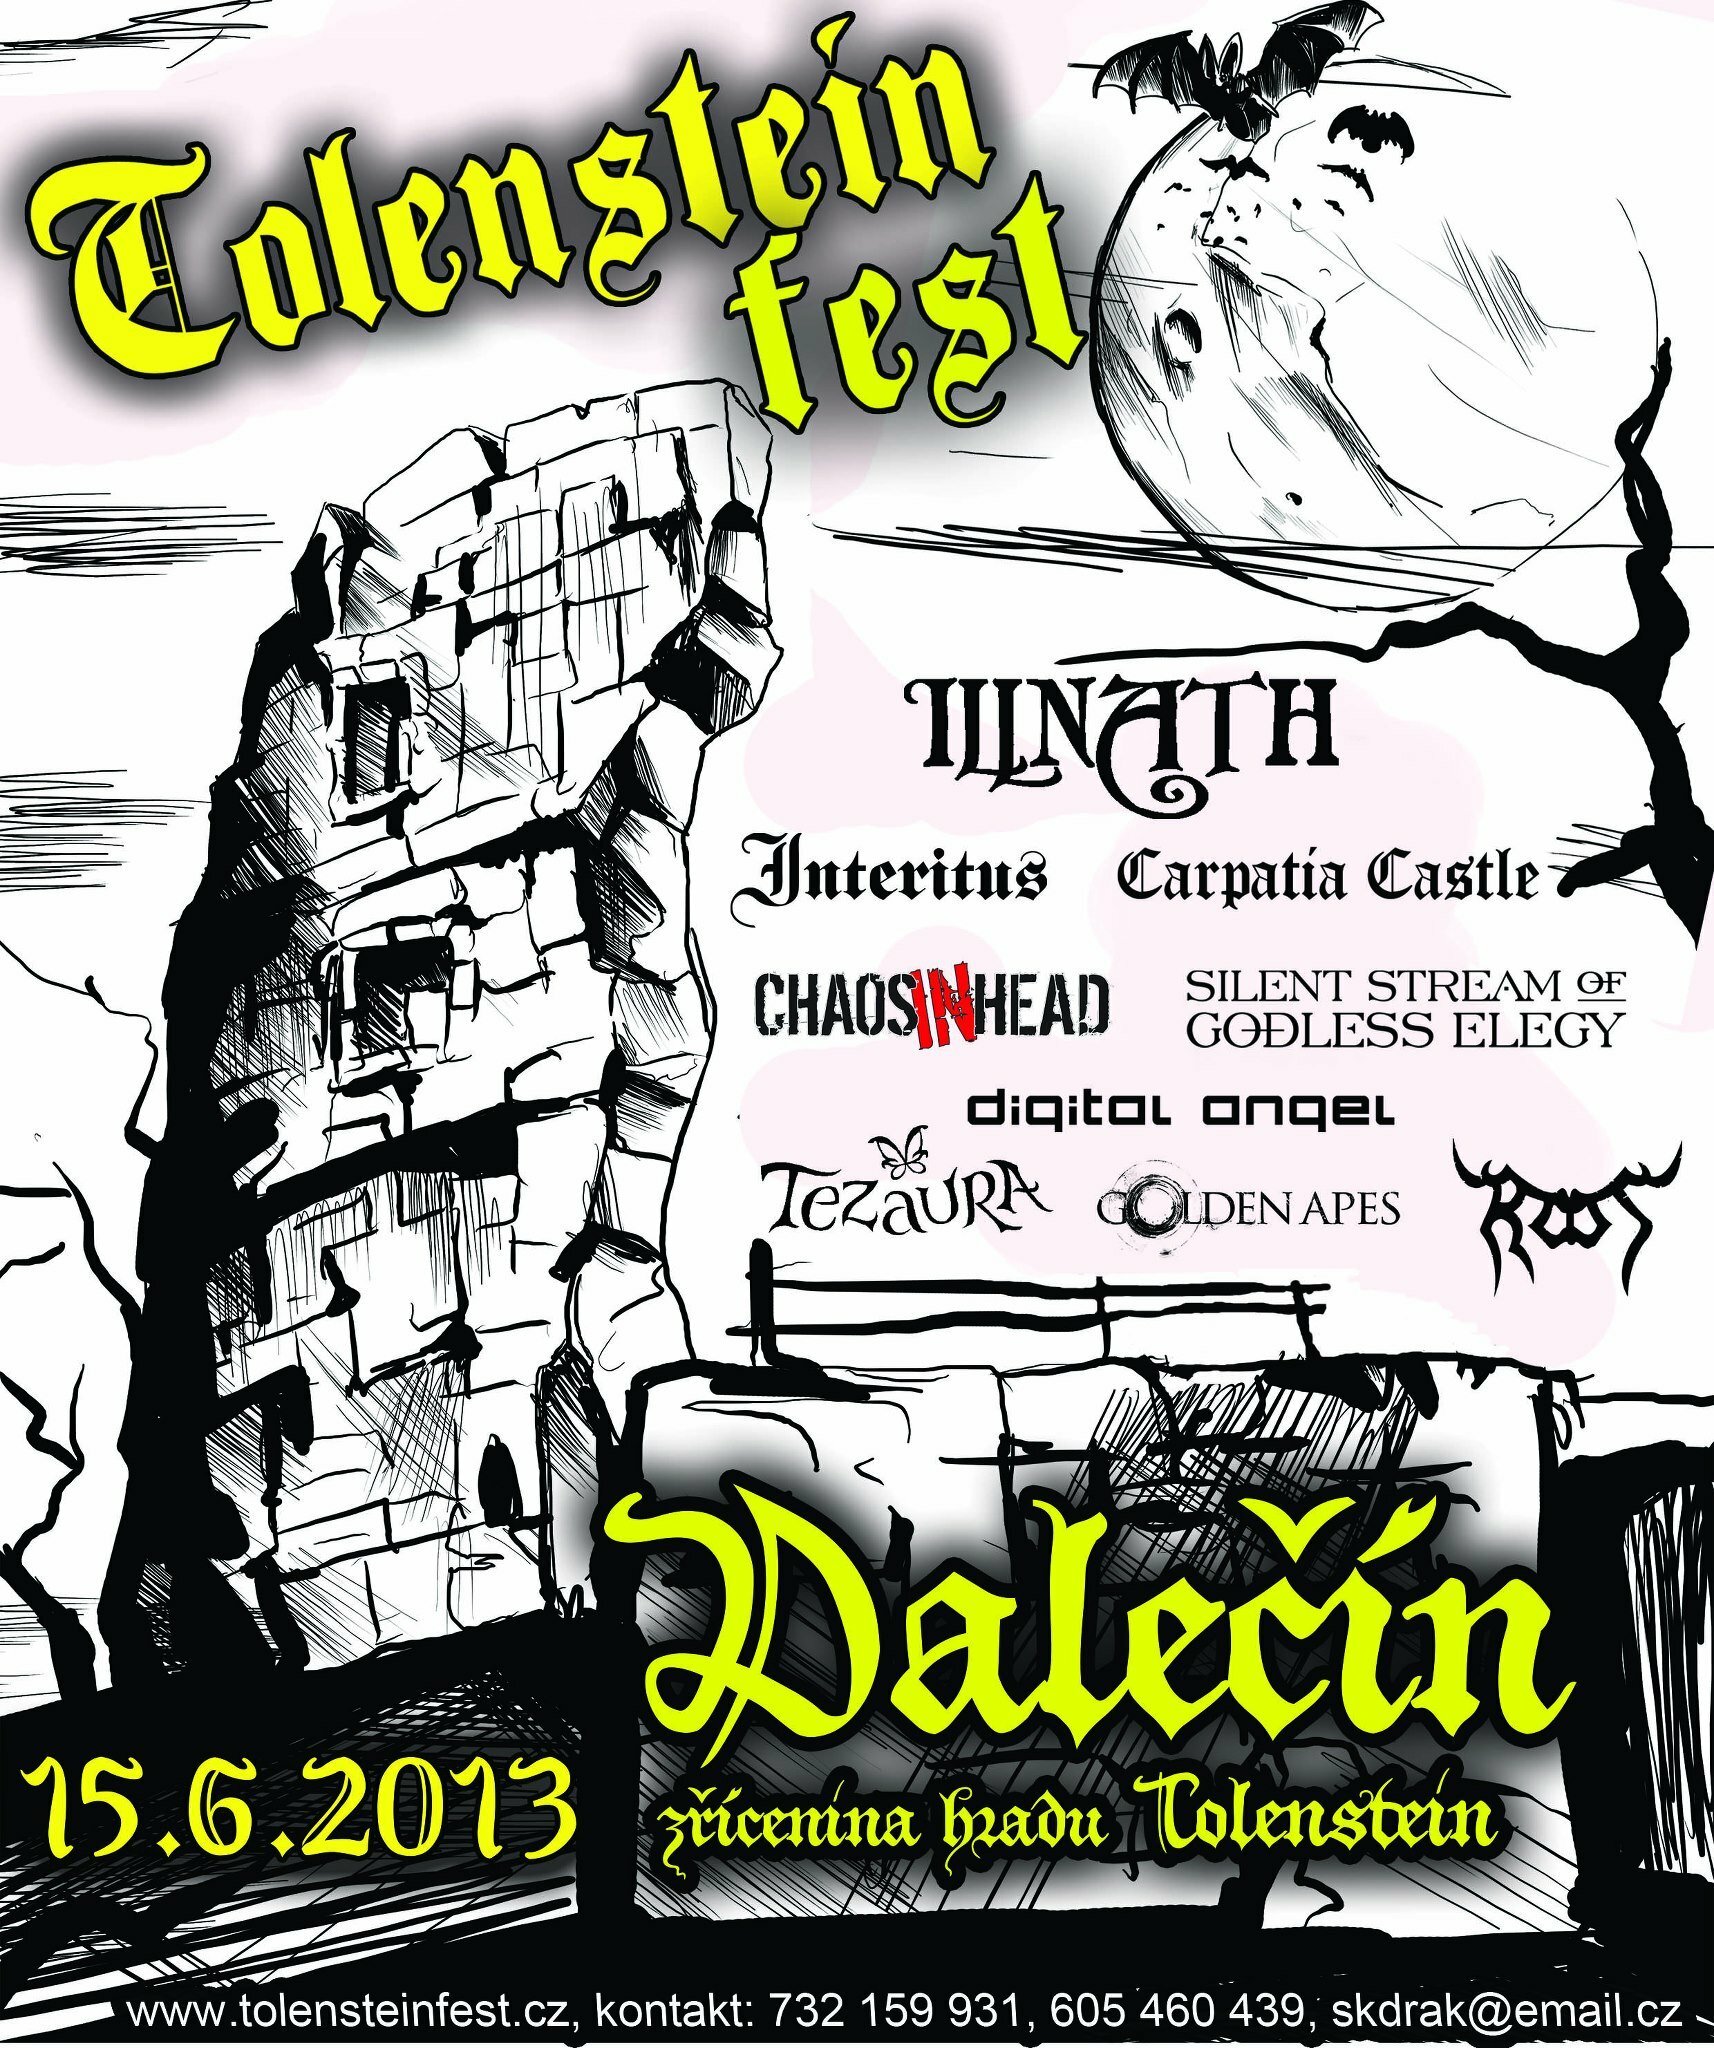 Tolenstein fest - pozvánka na událost na rok 2013